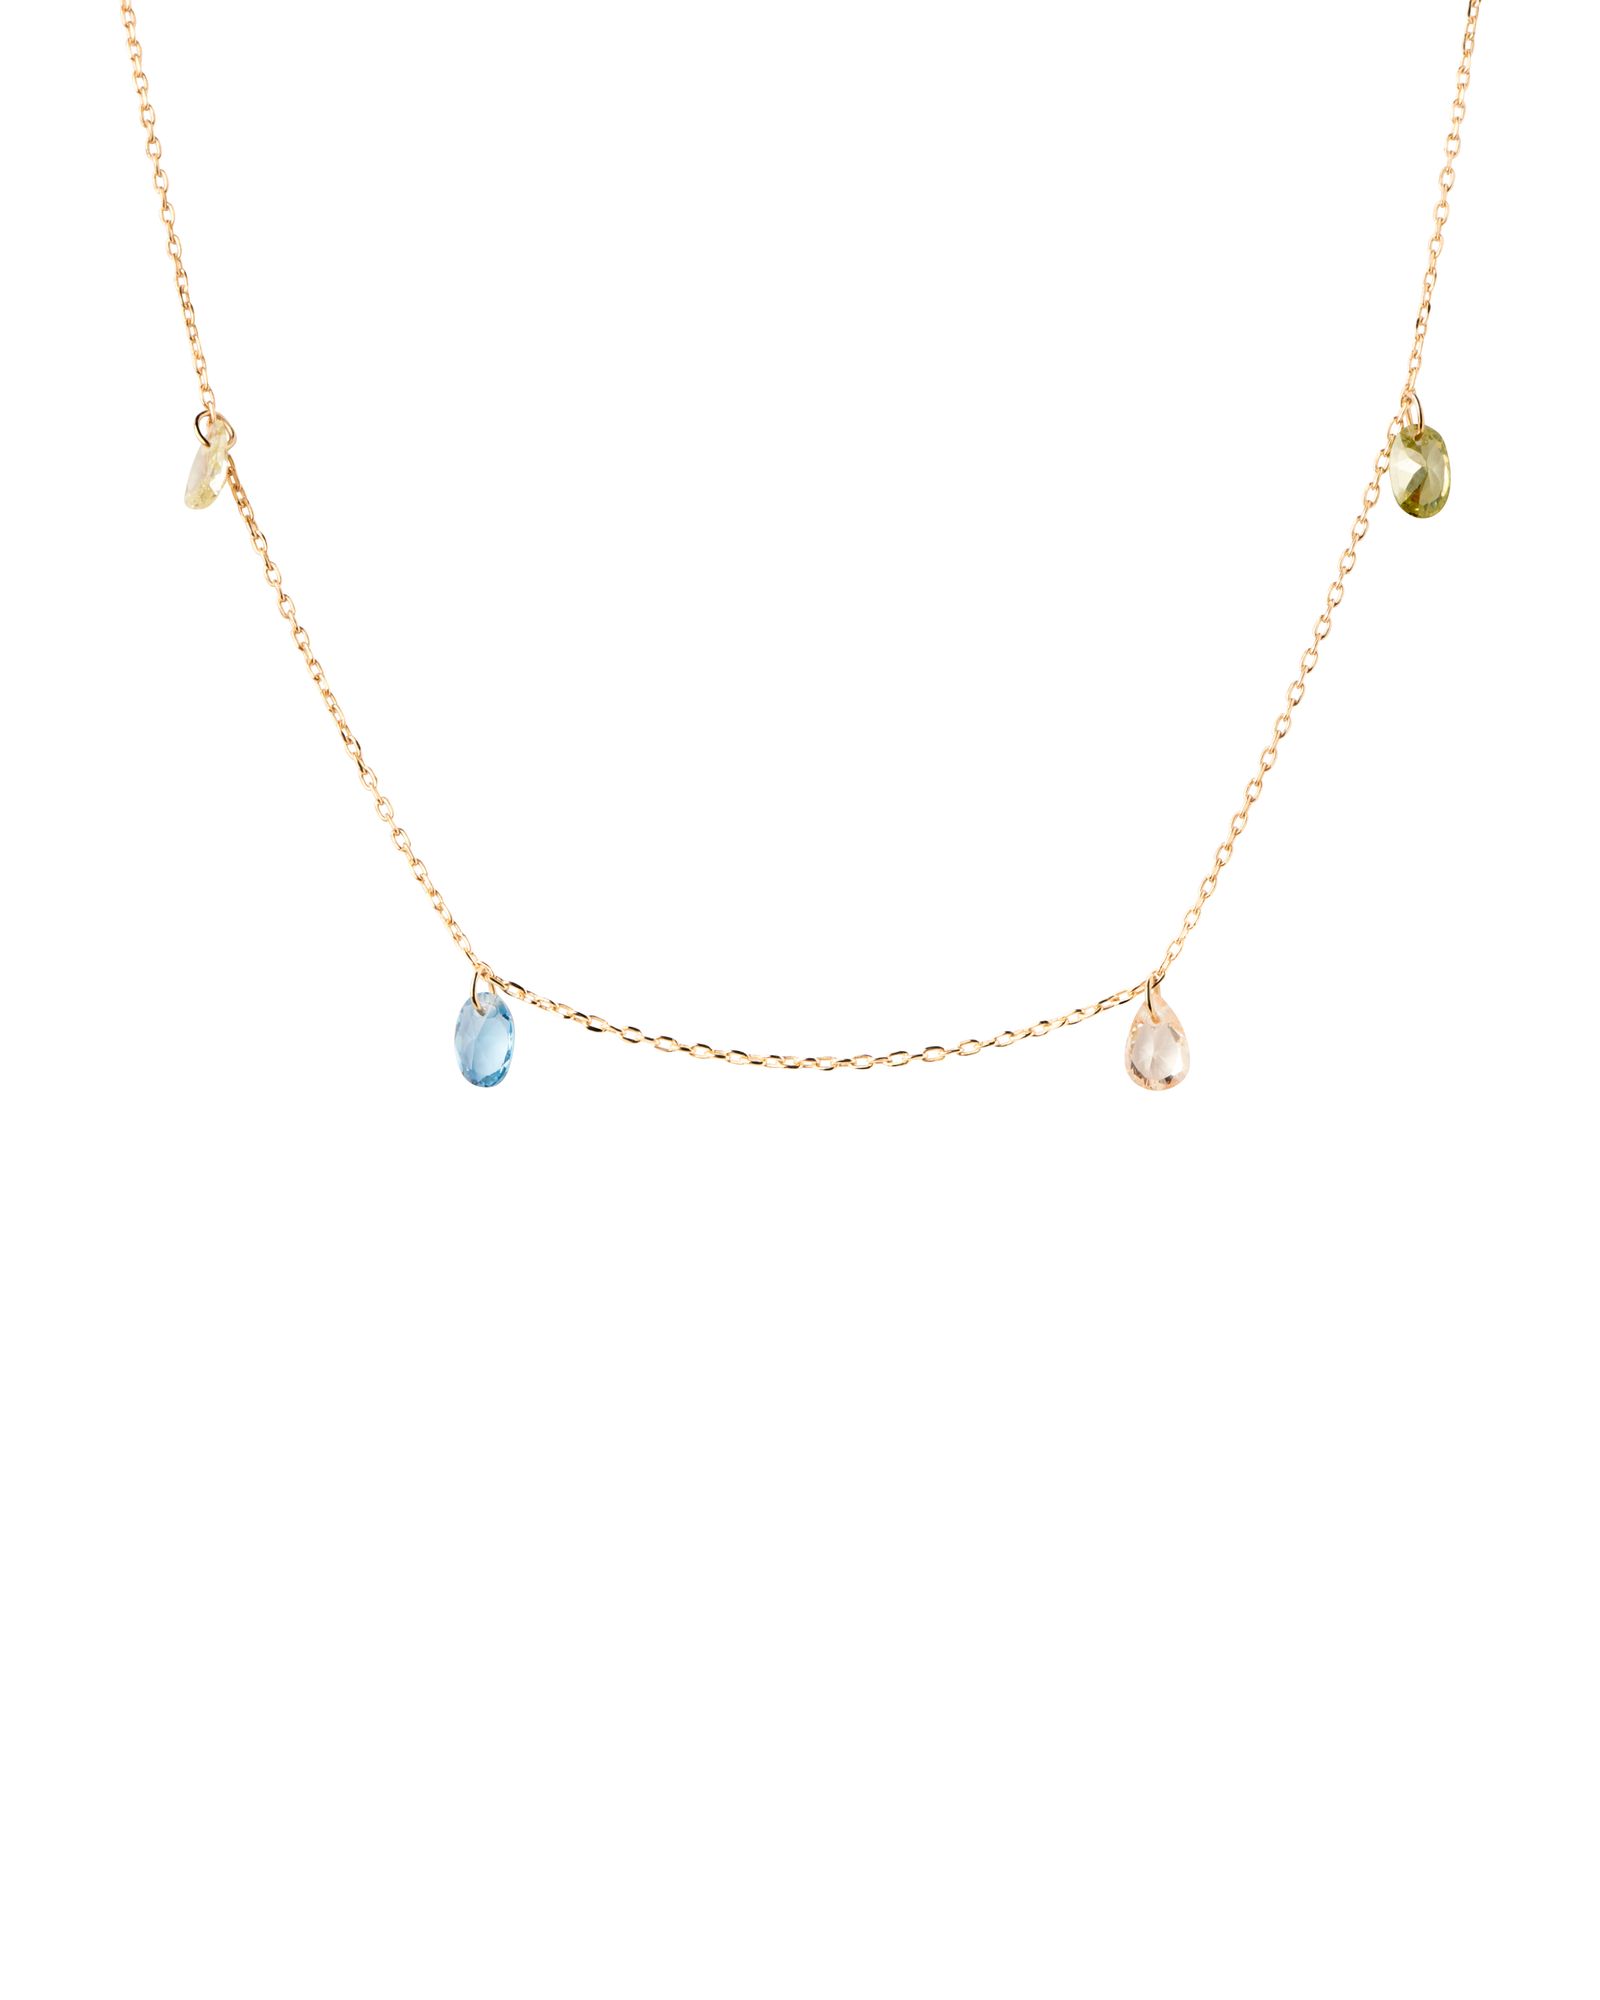 PDPAOLA Očarujúce pozlátený náhrdelník s príveskami RAINBOW Gold CO01-866-U